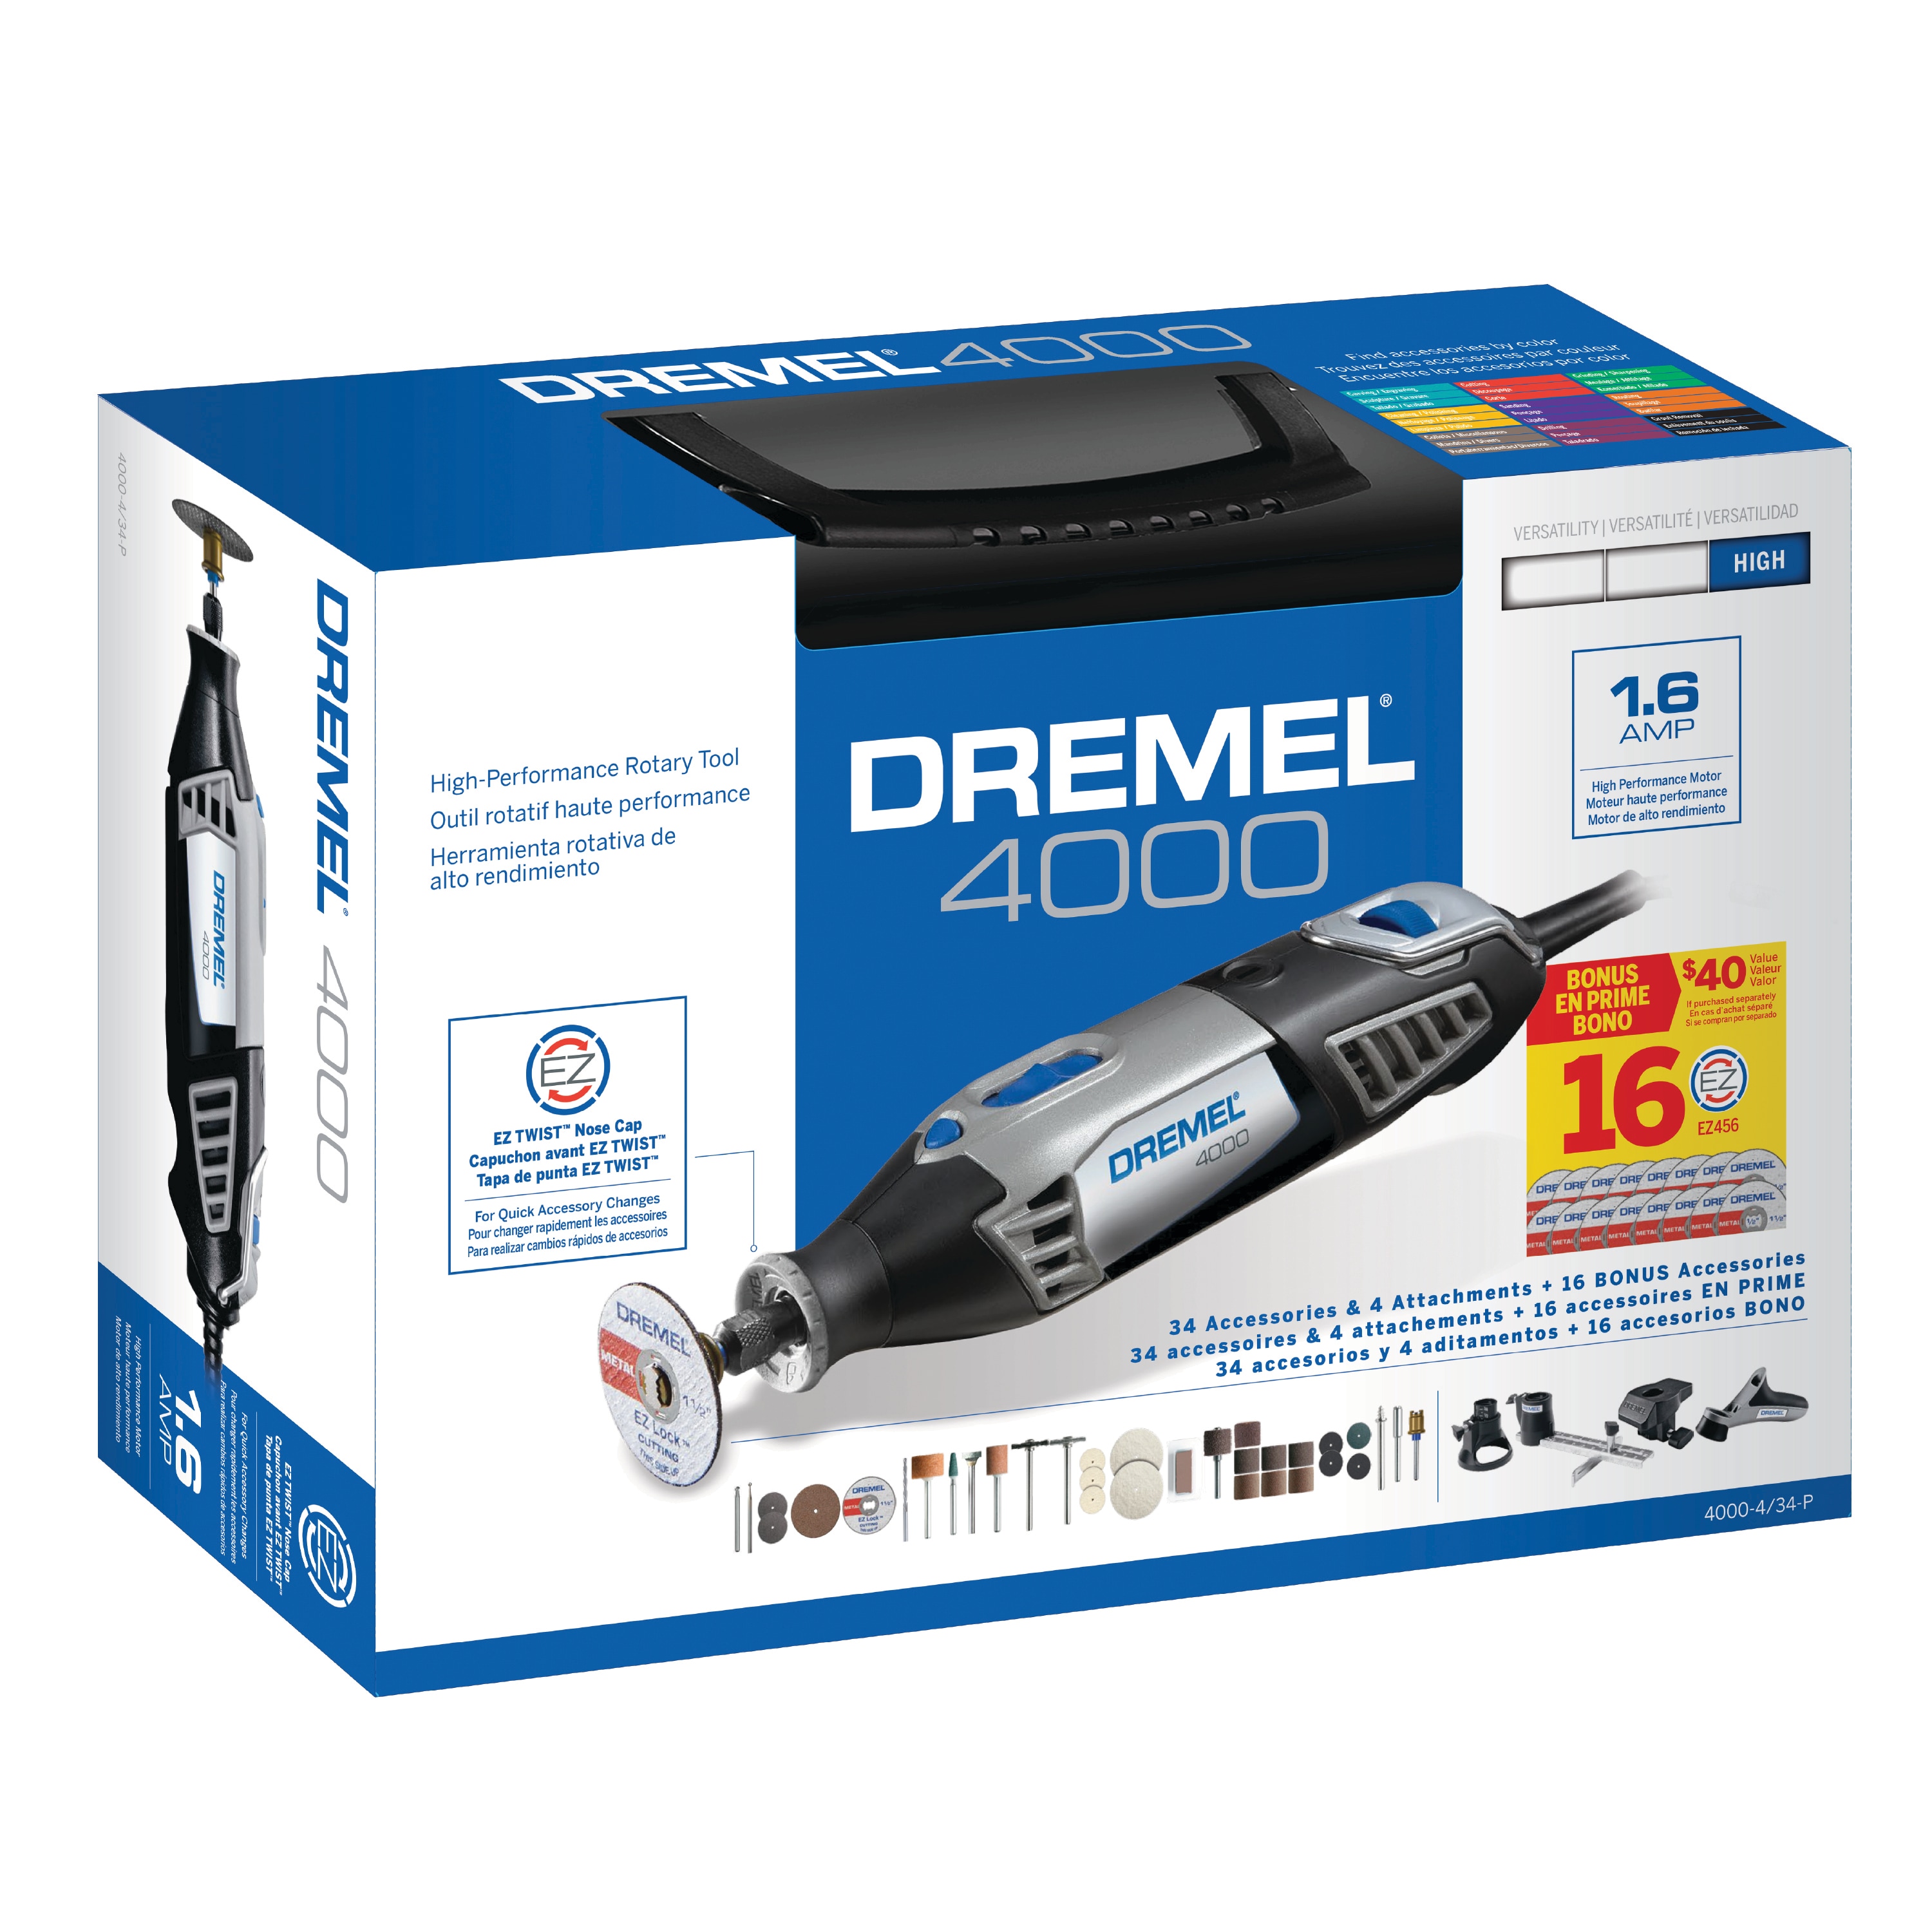 Dremel 4000-4/50 - 240V 175W Variable Speed Rotary Tool w/ Flex